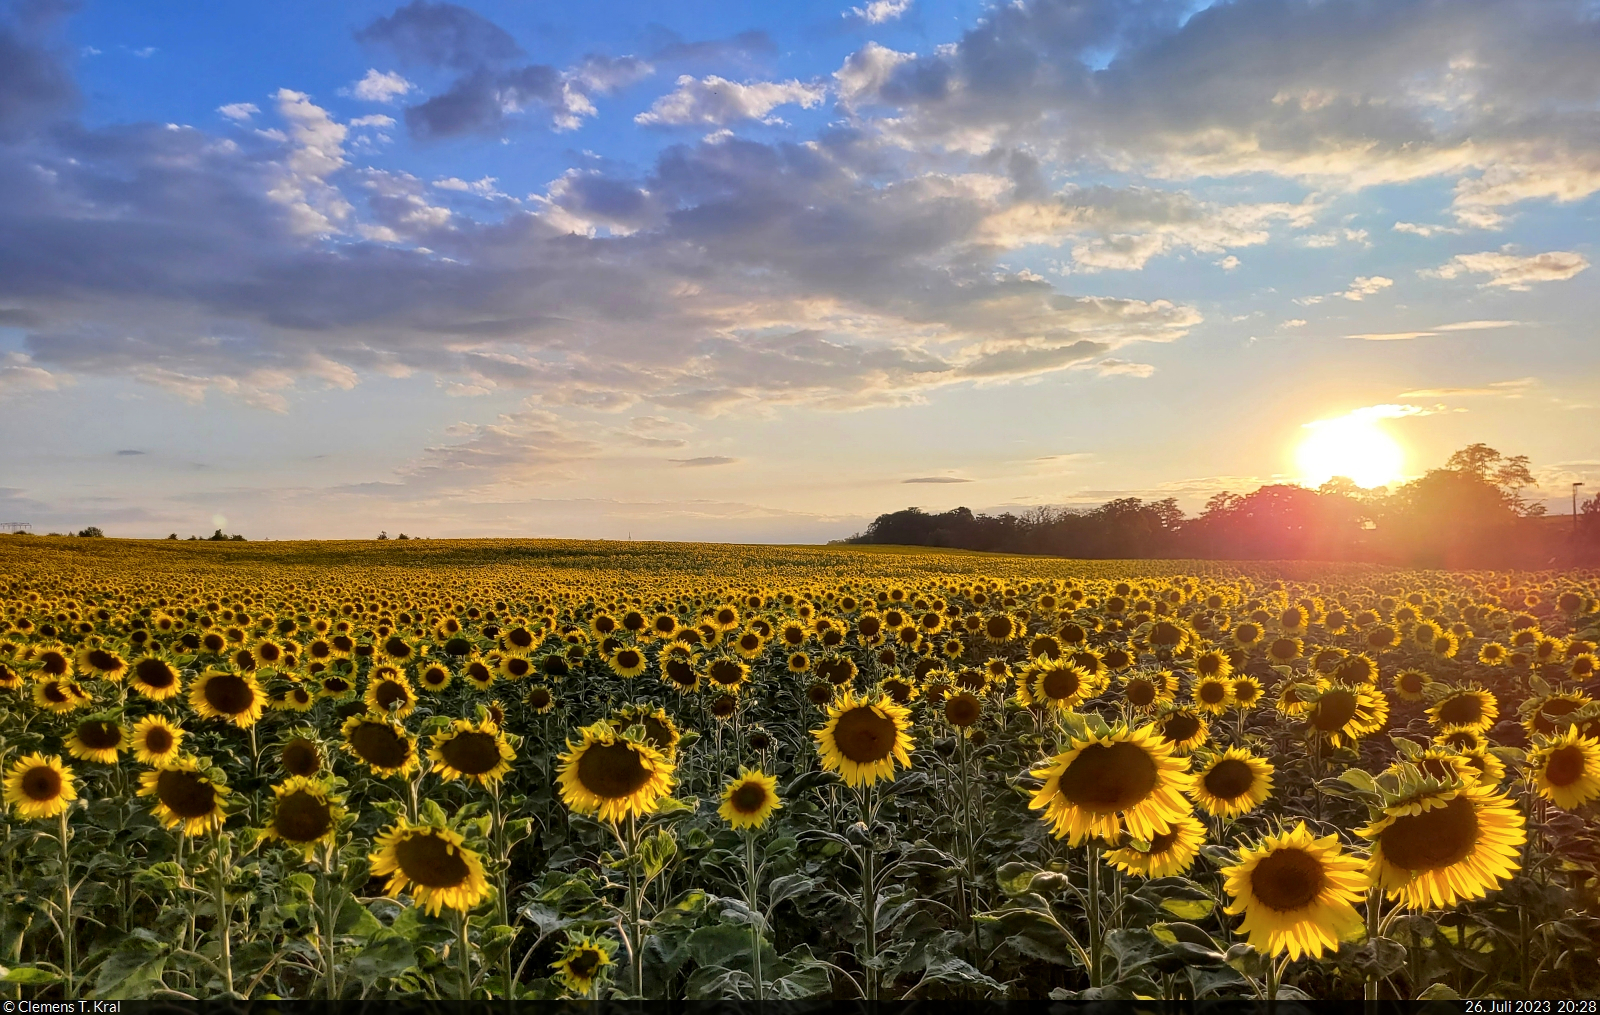 Sonnenblumenfeld am Ortsrand von Zscherben (Gemeinde Teutschenthal) an einem doch noch sonnigen Abend.

🕓 26.7.2023 | 20:28 Uhr